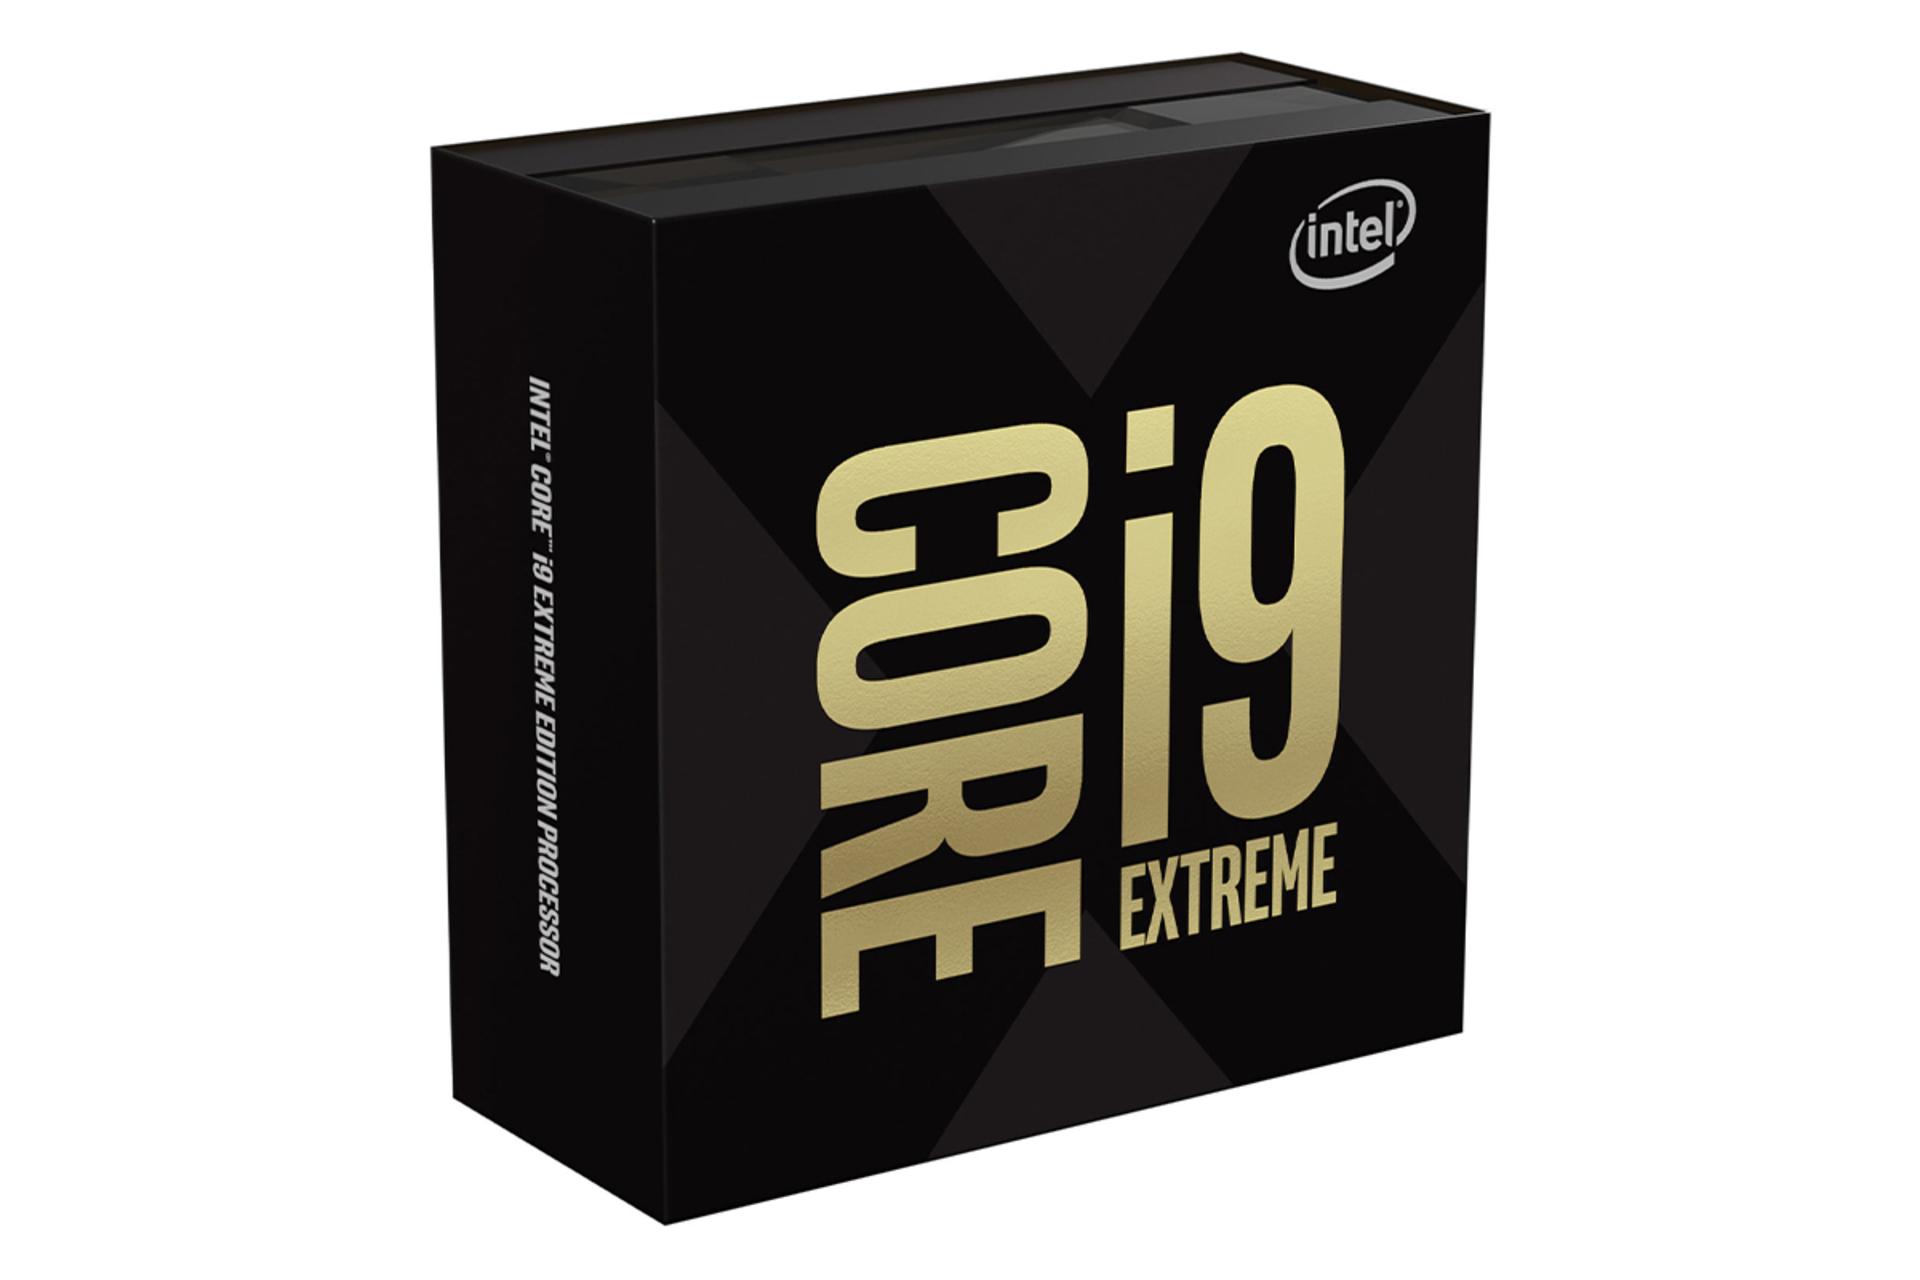 اینتل Core i9-9980XE اکستریم ادیشن / Intel Core i9-9980XE Extreme Edition